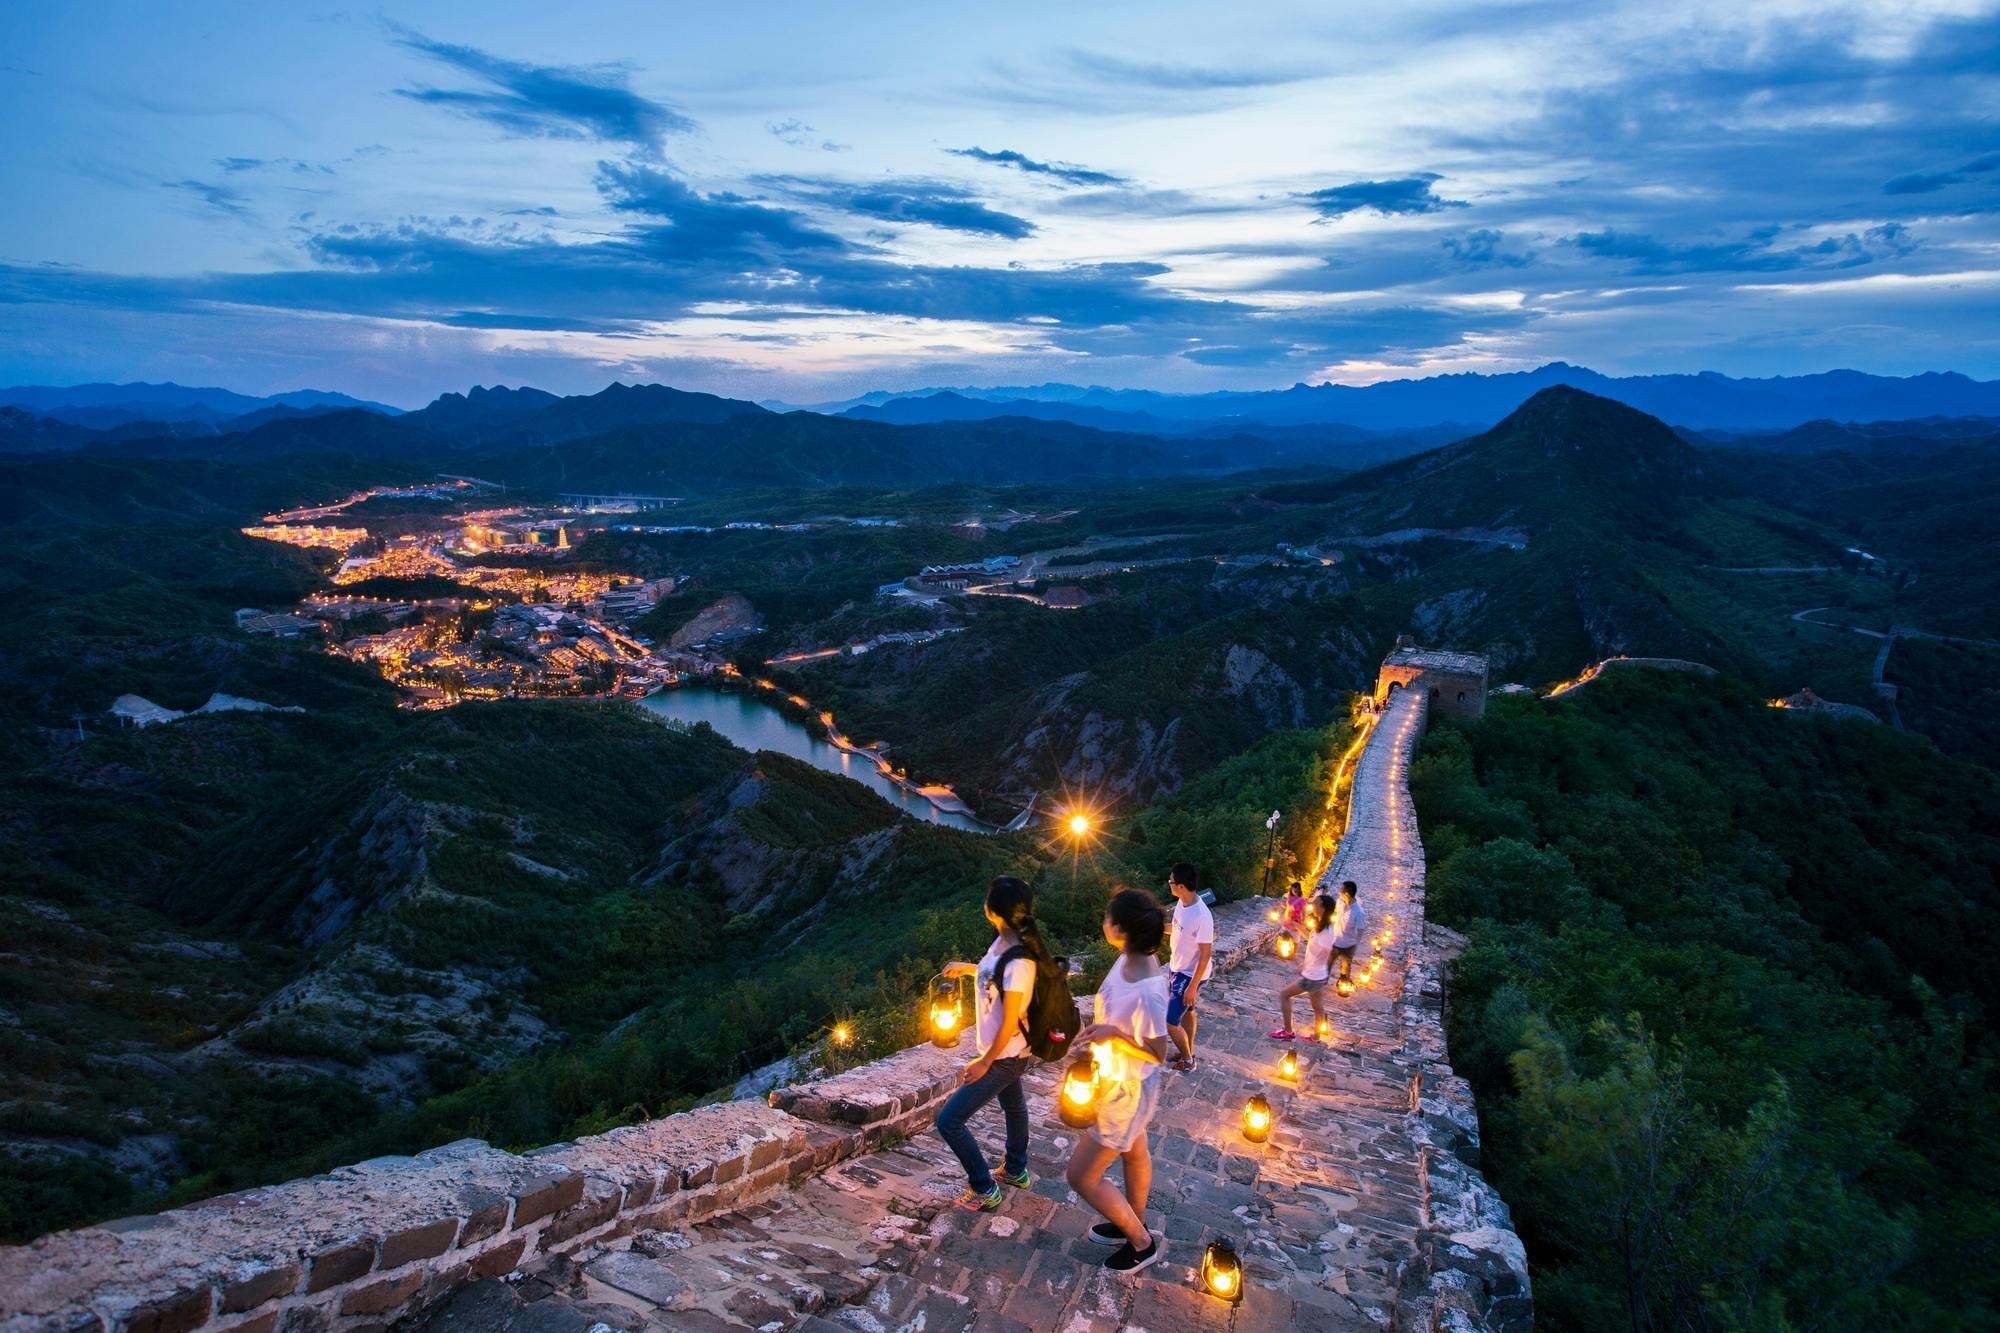 Beleuchtete Wasserstadt Gubei und All-Inclusive-Tour zur Simatai-Chinesischen Mauer